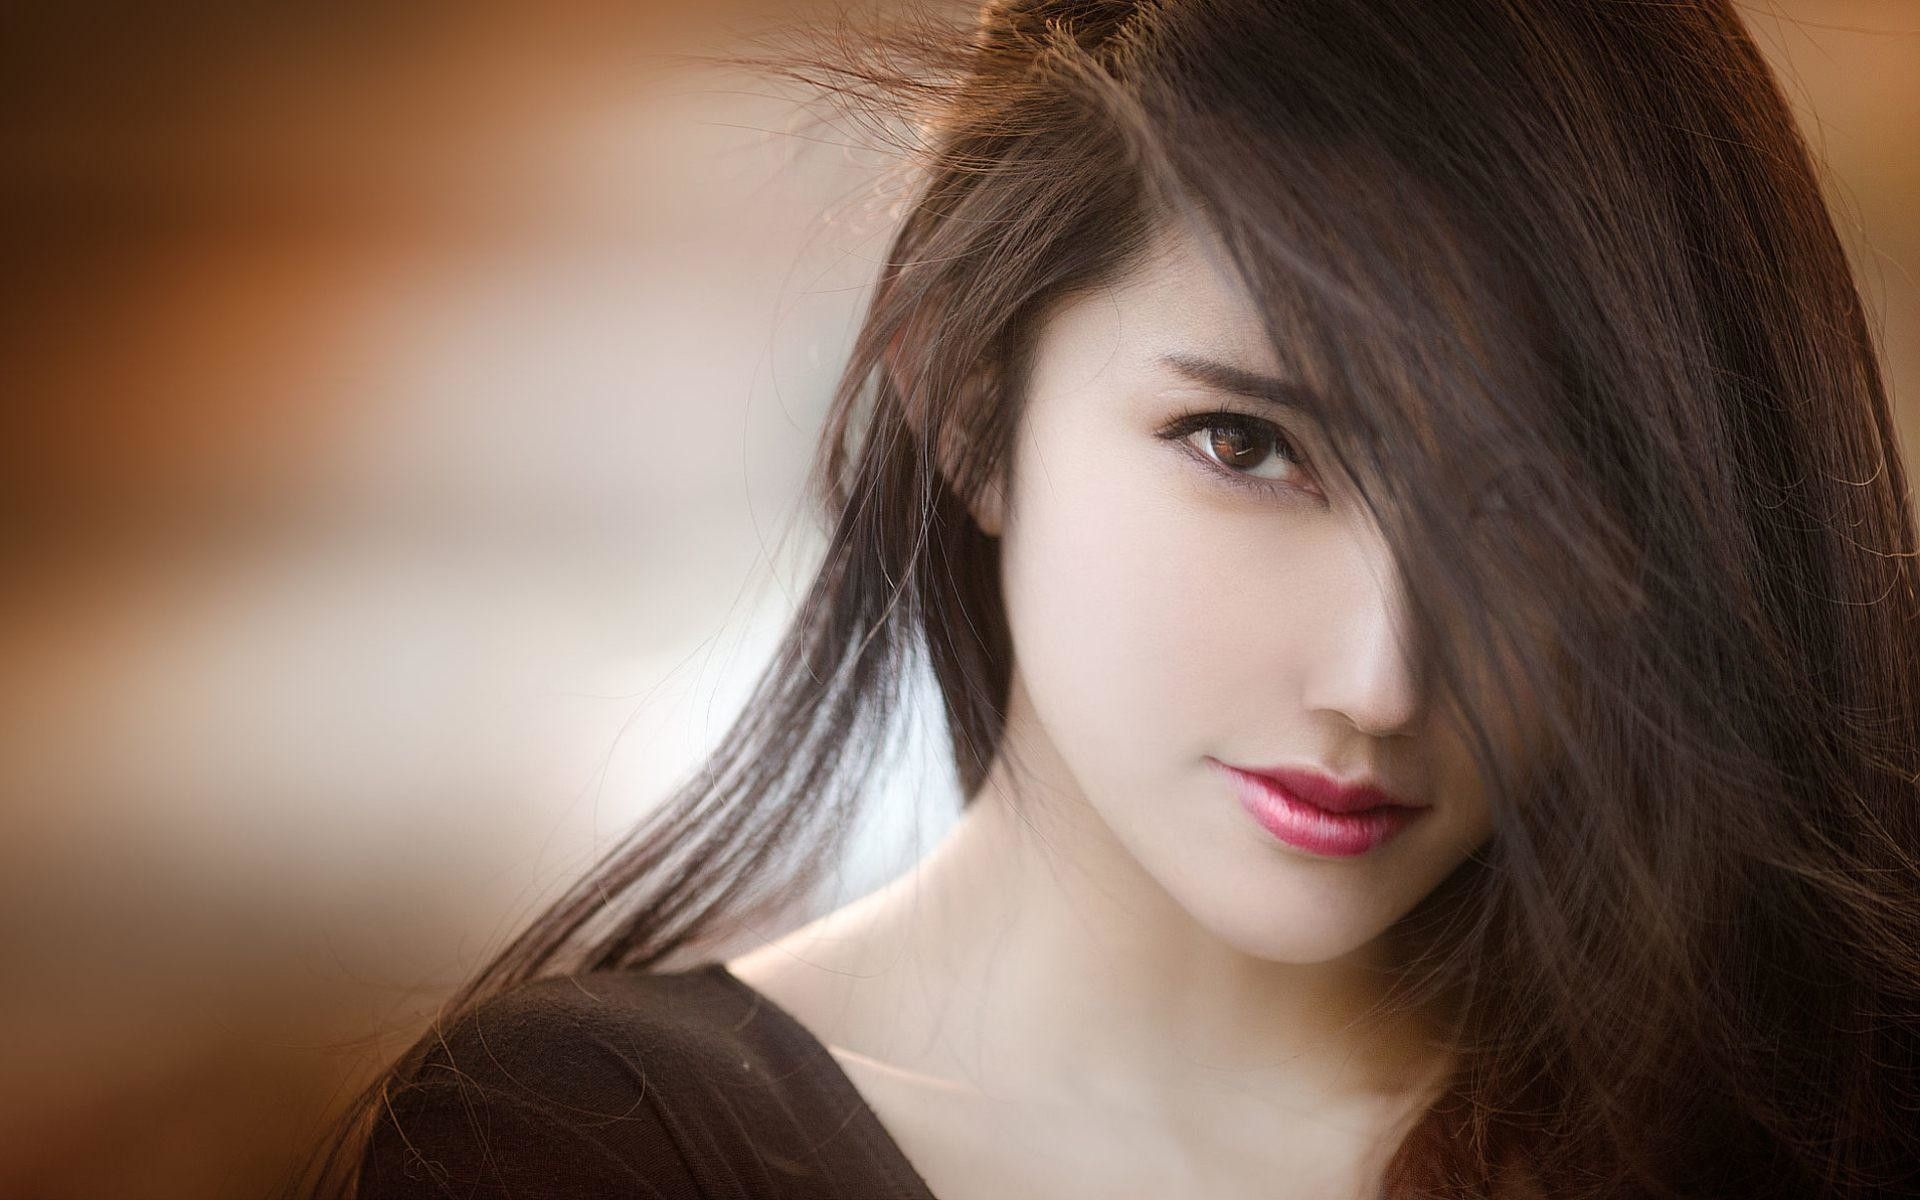 Most Beautiful Women: Oriental-looking, Asian appearance, Model-worthy looks. 1920x1200 HD Wallpaper.